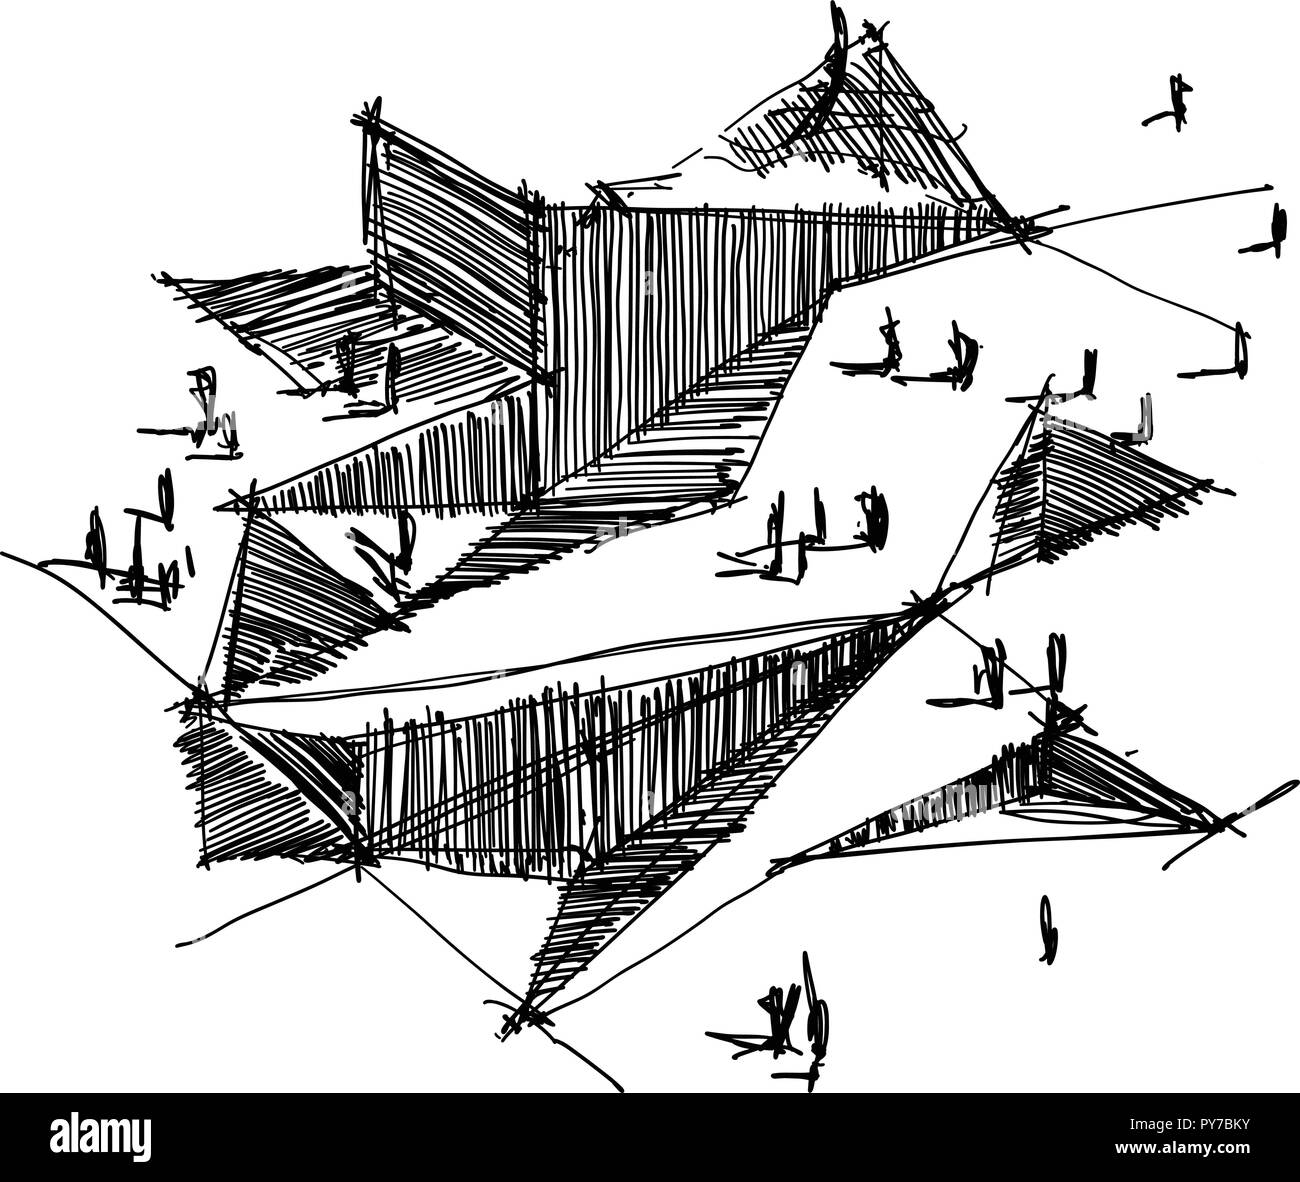 Disegnato a mano schizzo architettonico di una moderna architettura astratta Illustrazione Vettoriale